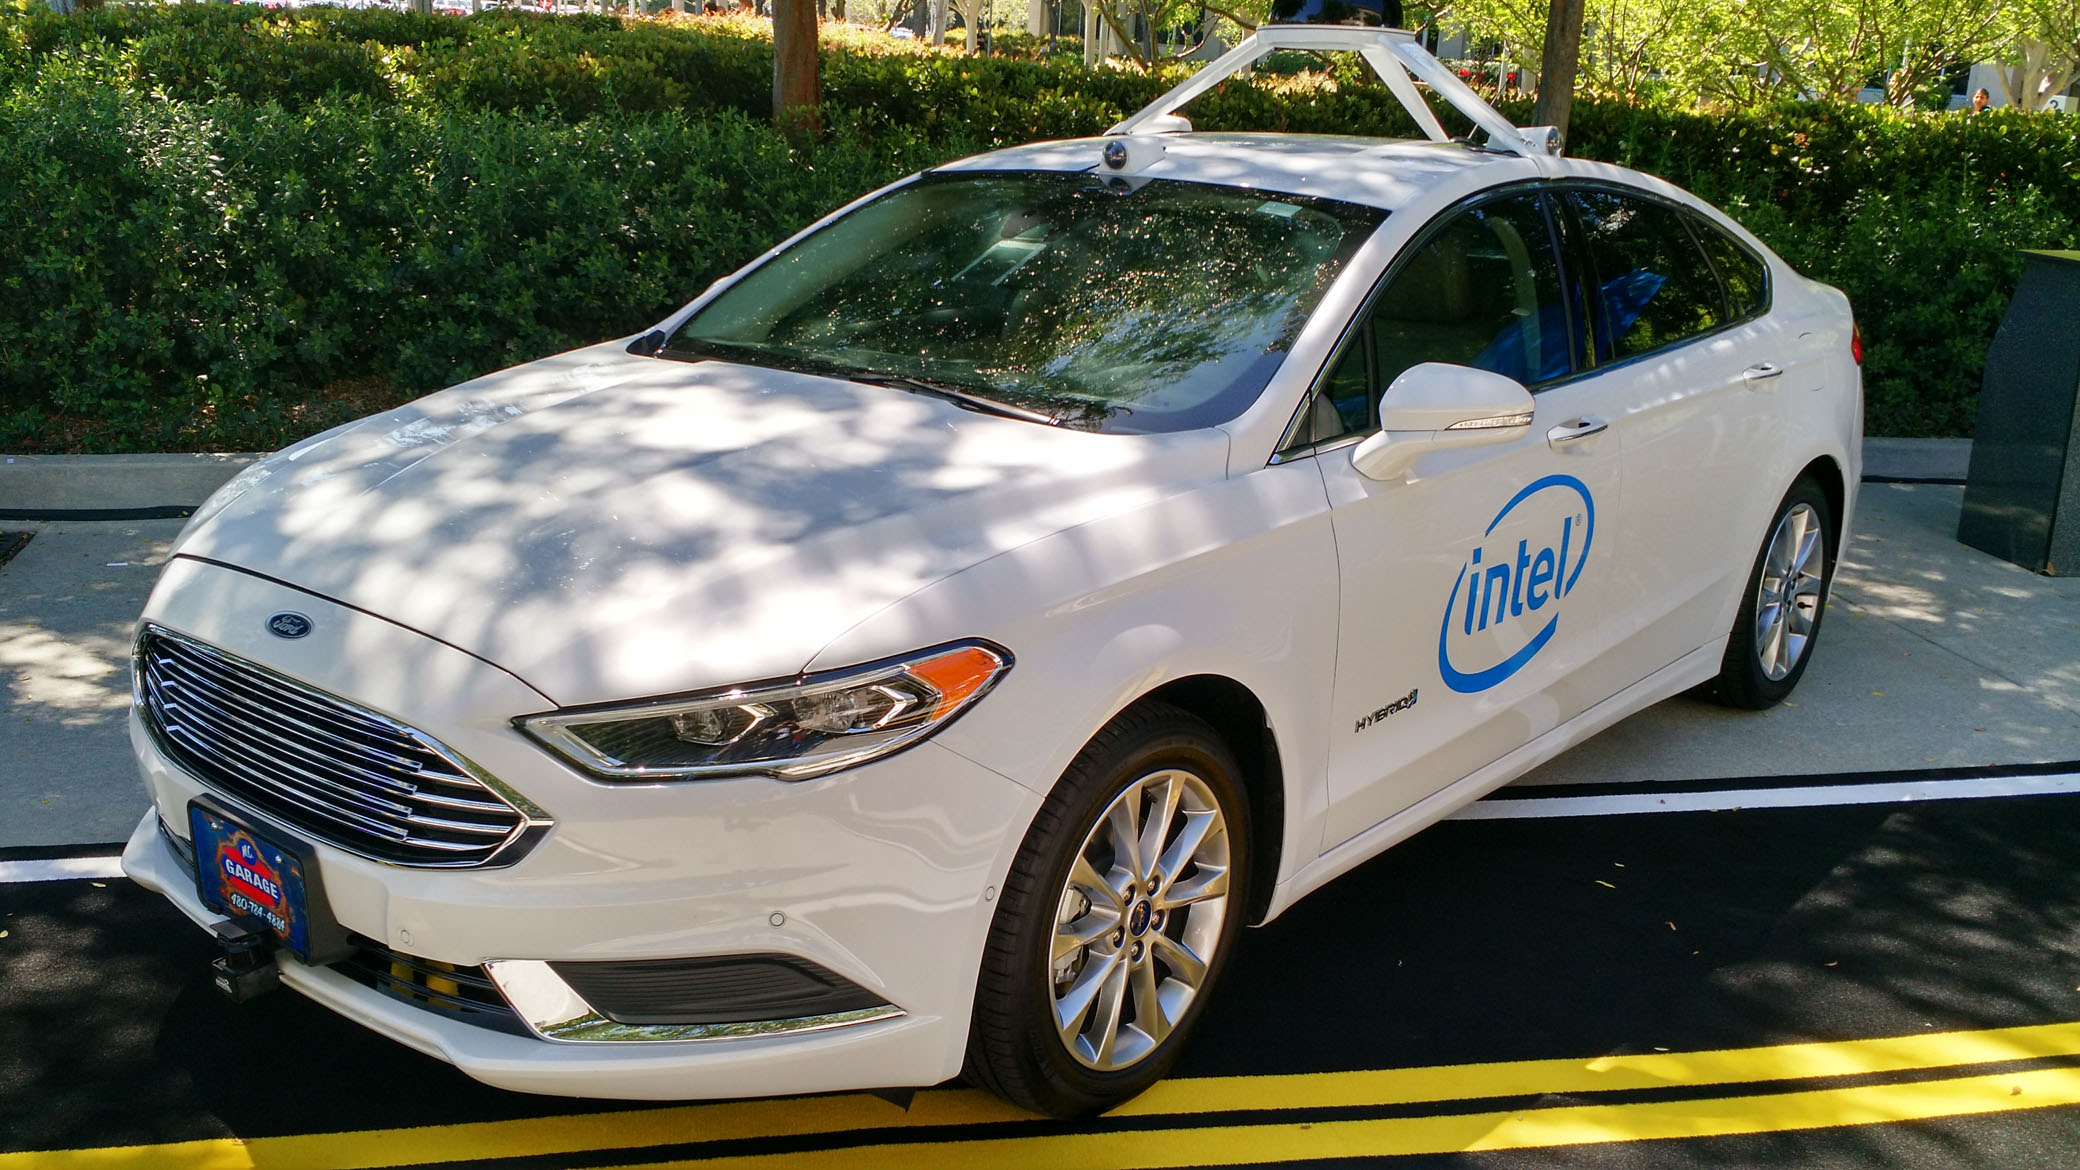 One of Intel’s autonomous driving test vehicles